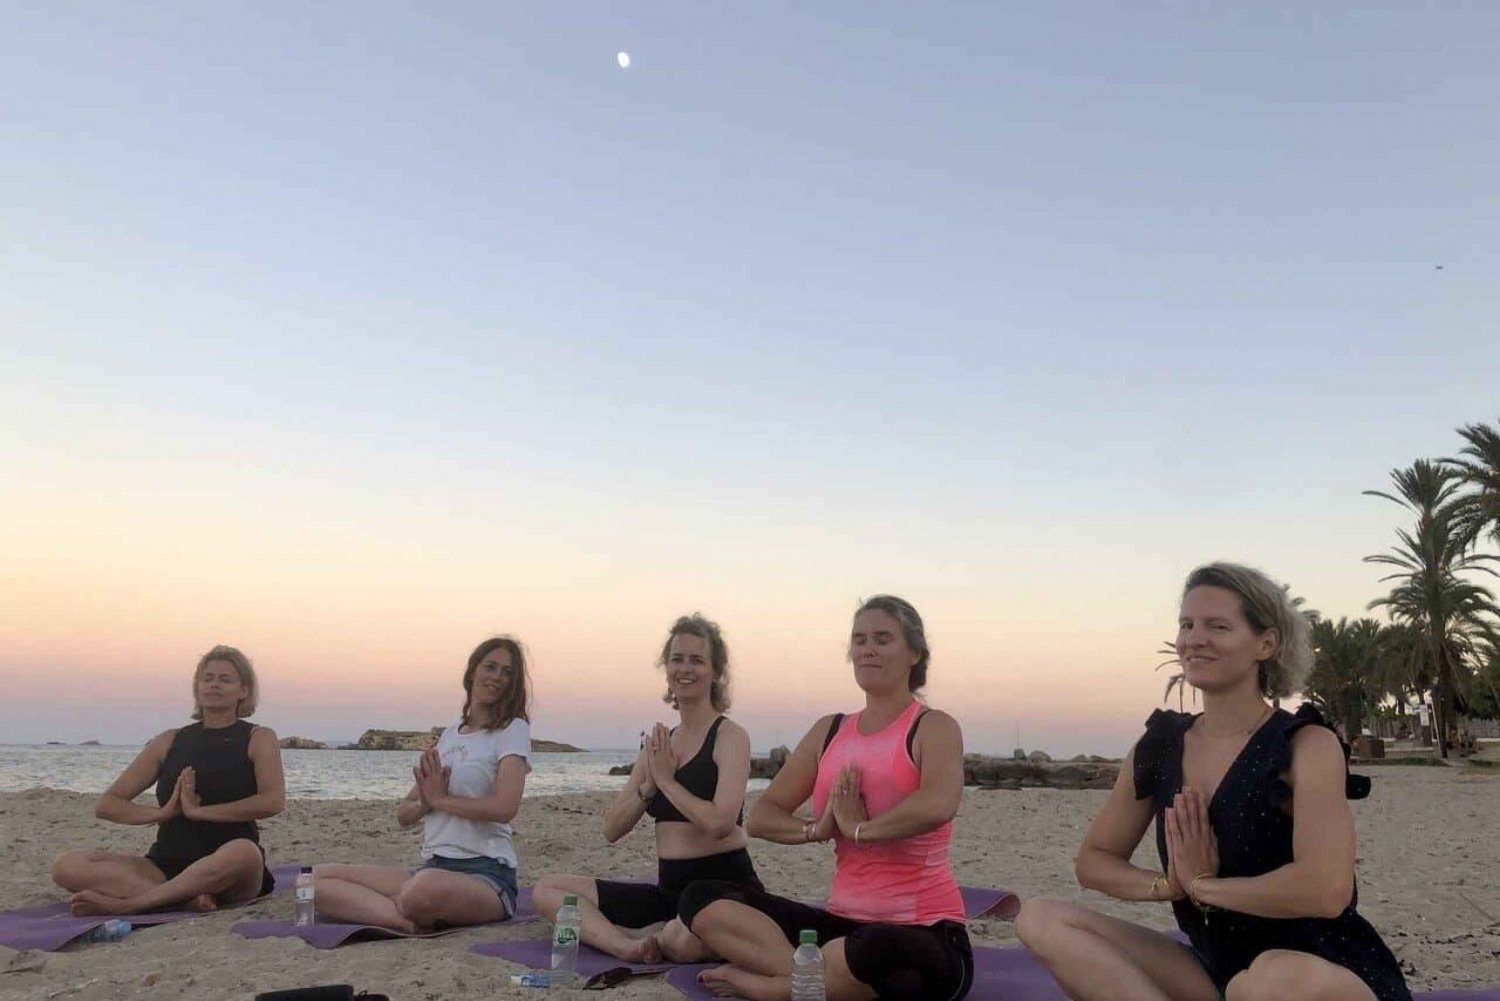 Lezione privata di yoga sulla spiaggia di Ibiza con gli amici